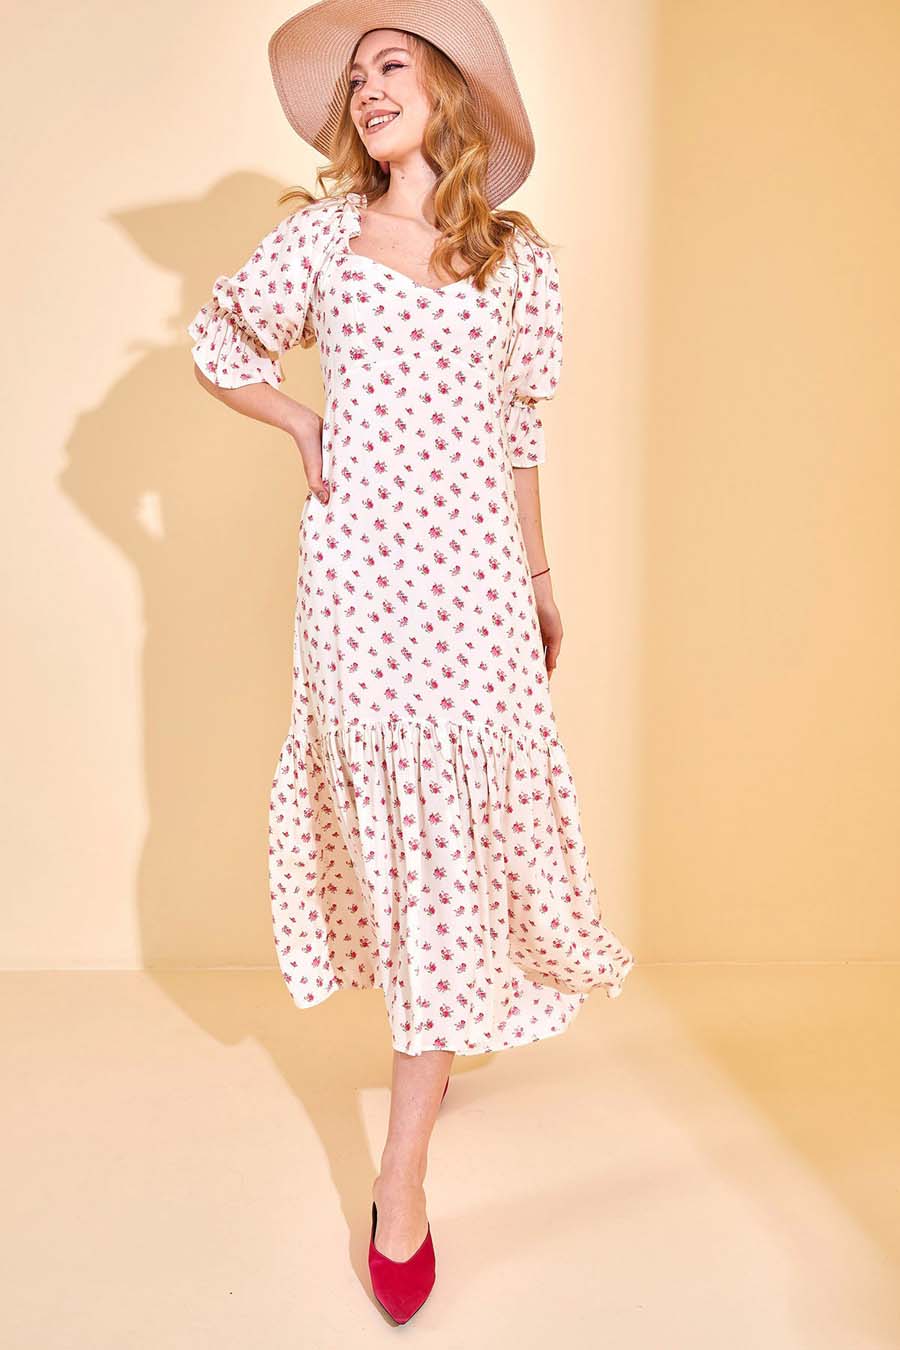 Γυναικείο φόρεμα Kaelyn, Λευκό/Ροζ 2